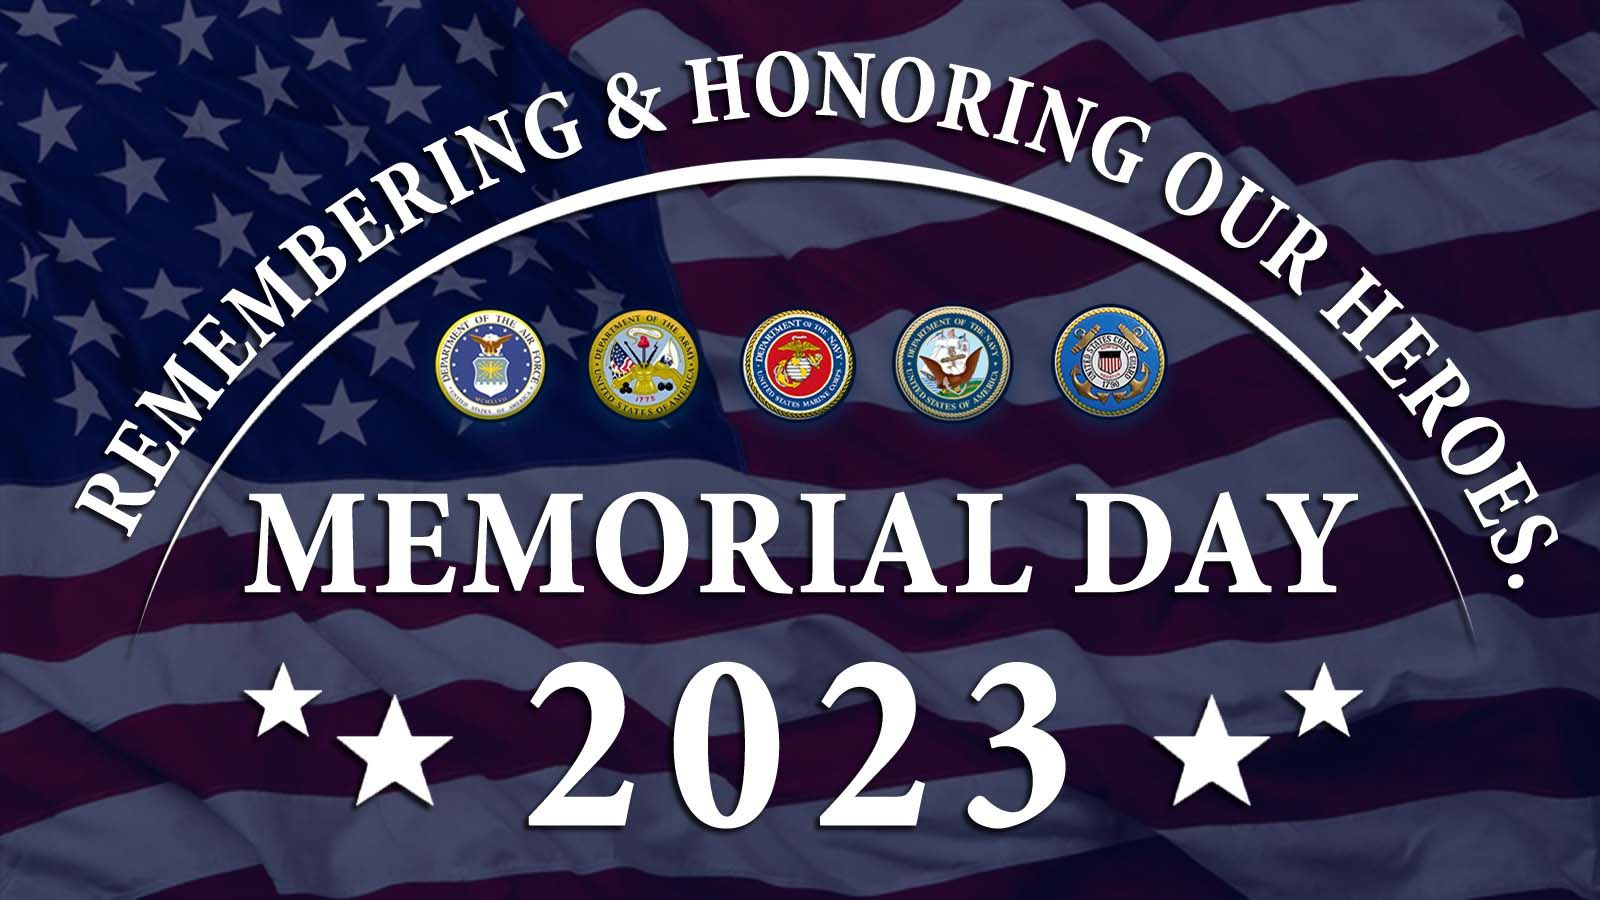 Memorial Day 2023